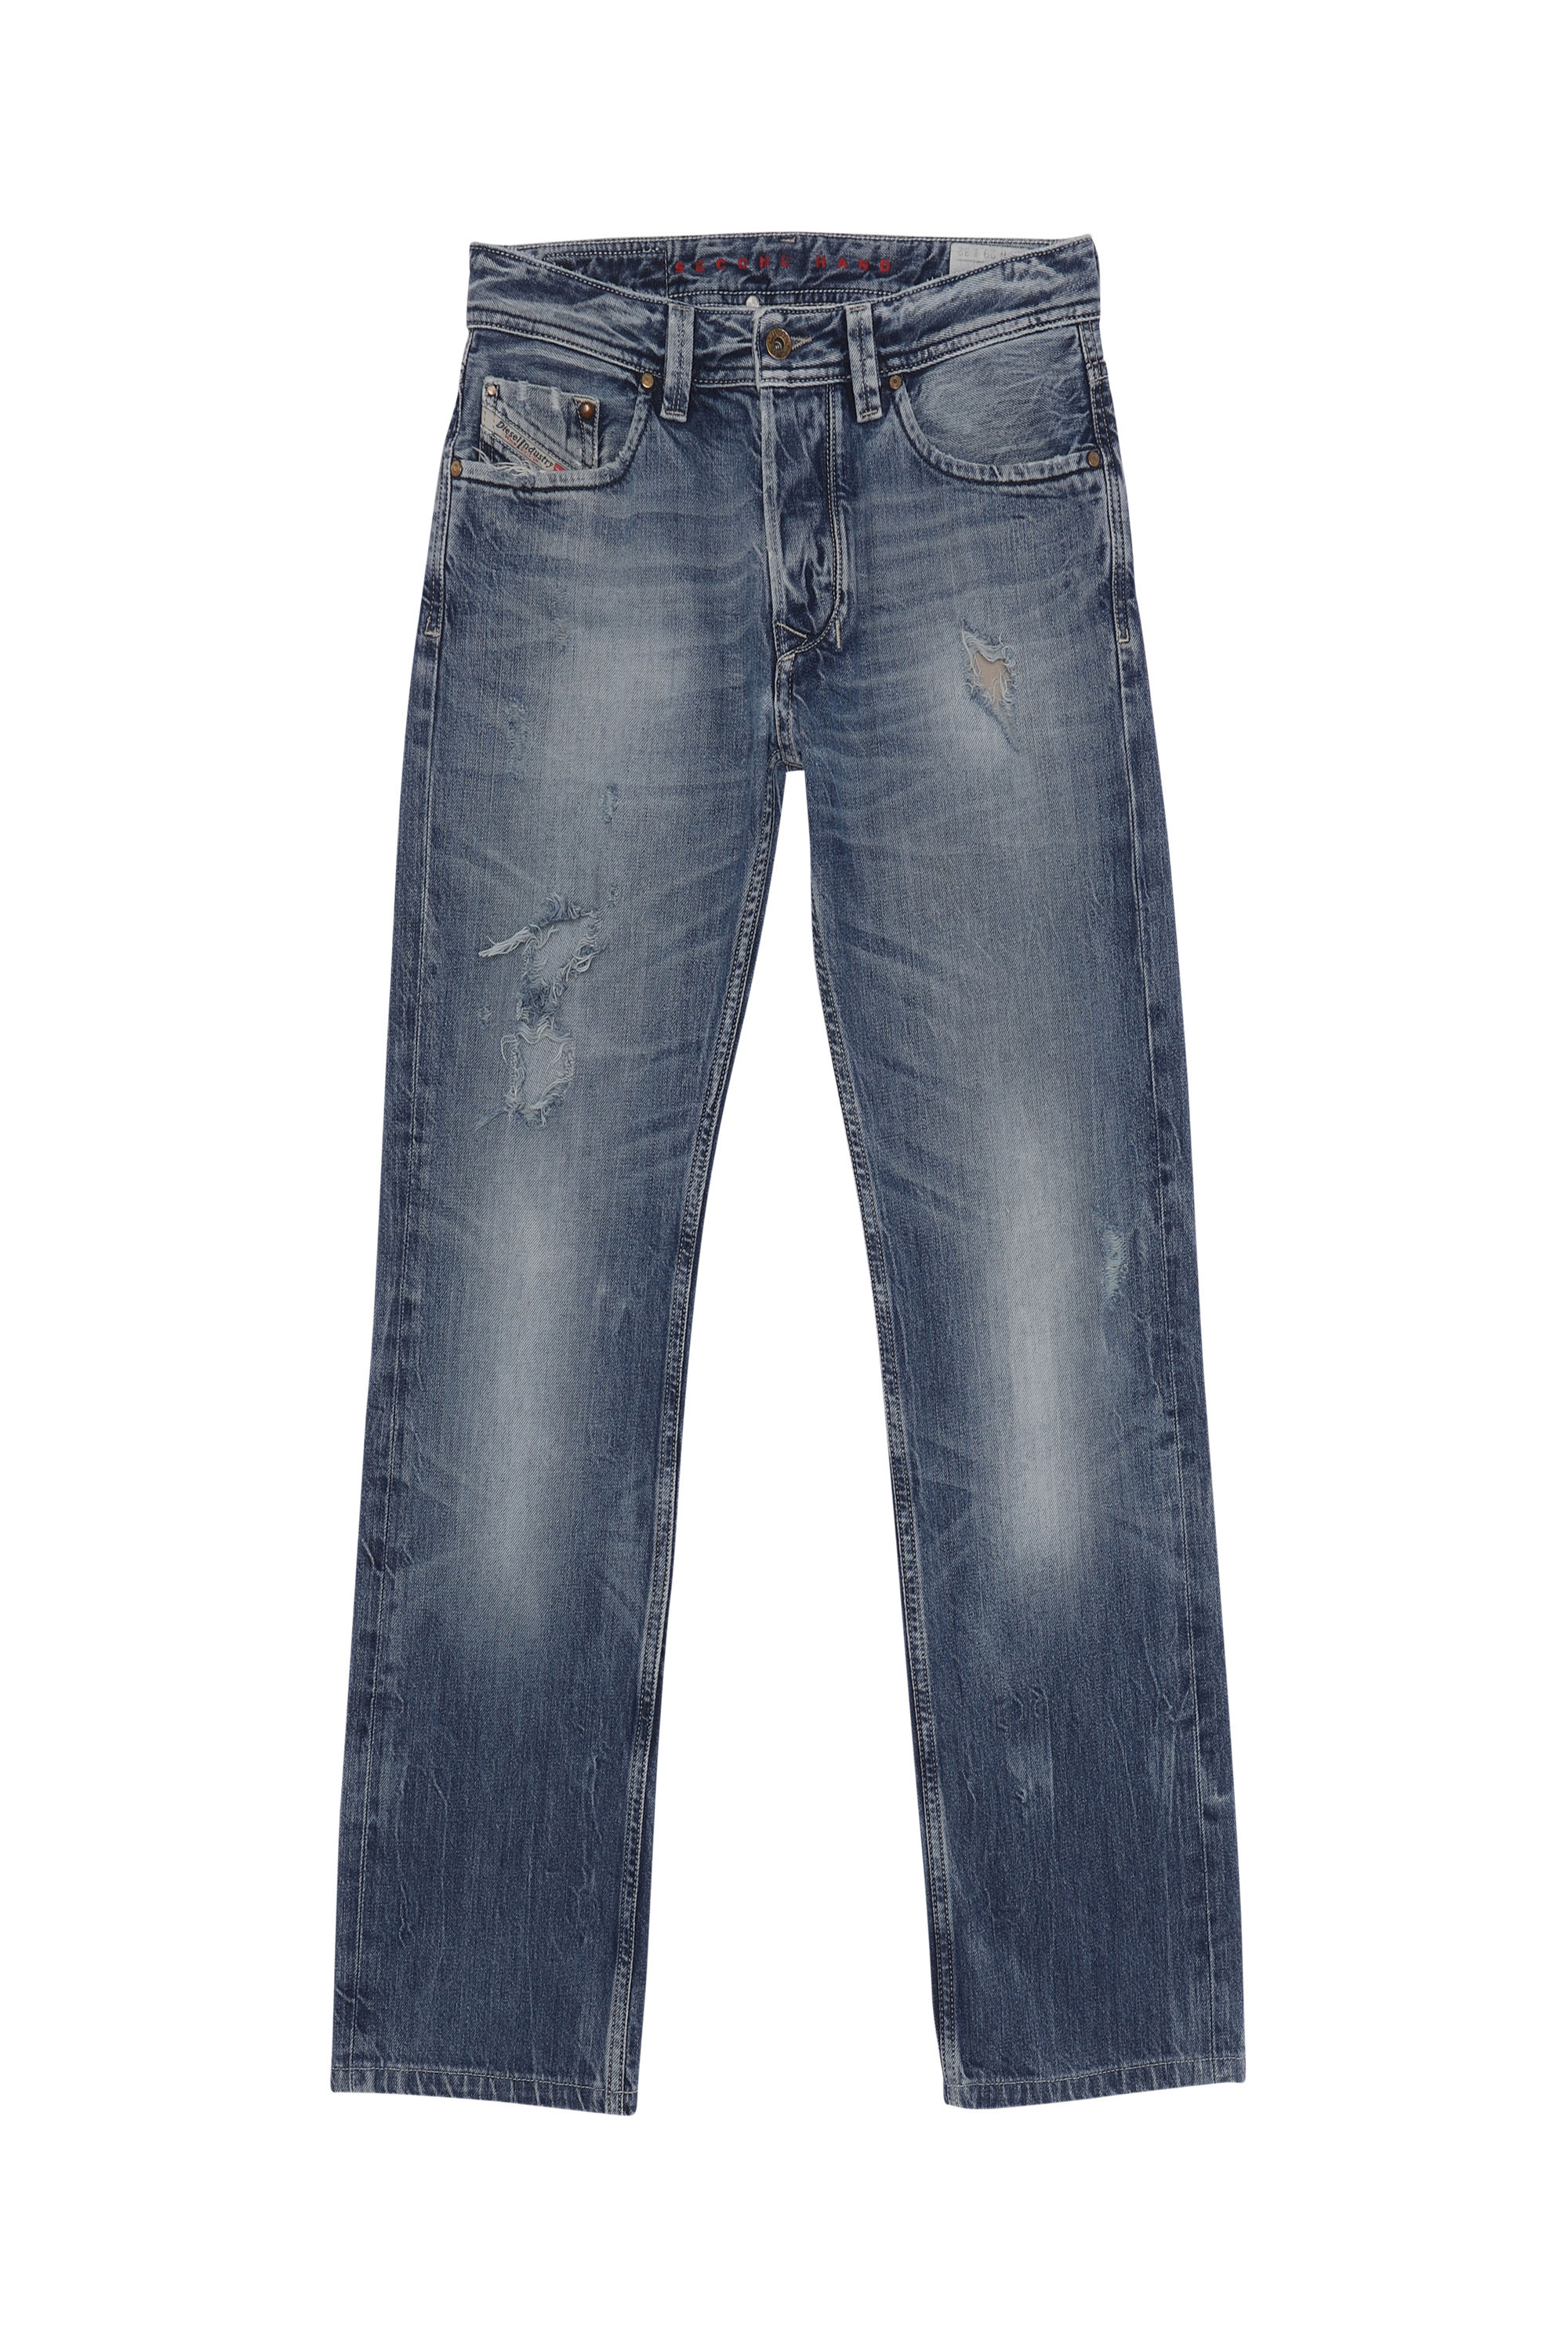 LARKEE, Medium blue - Jeans